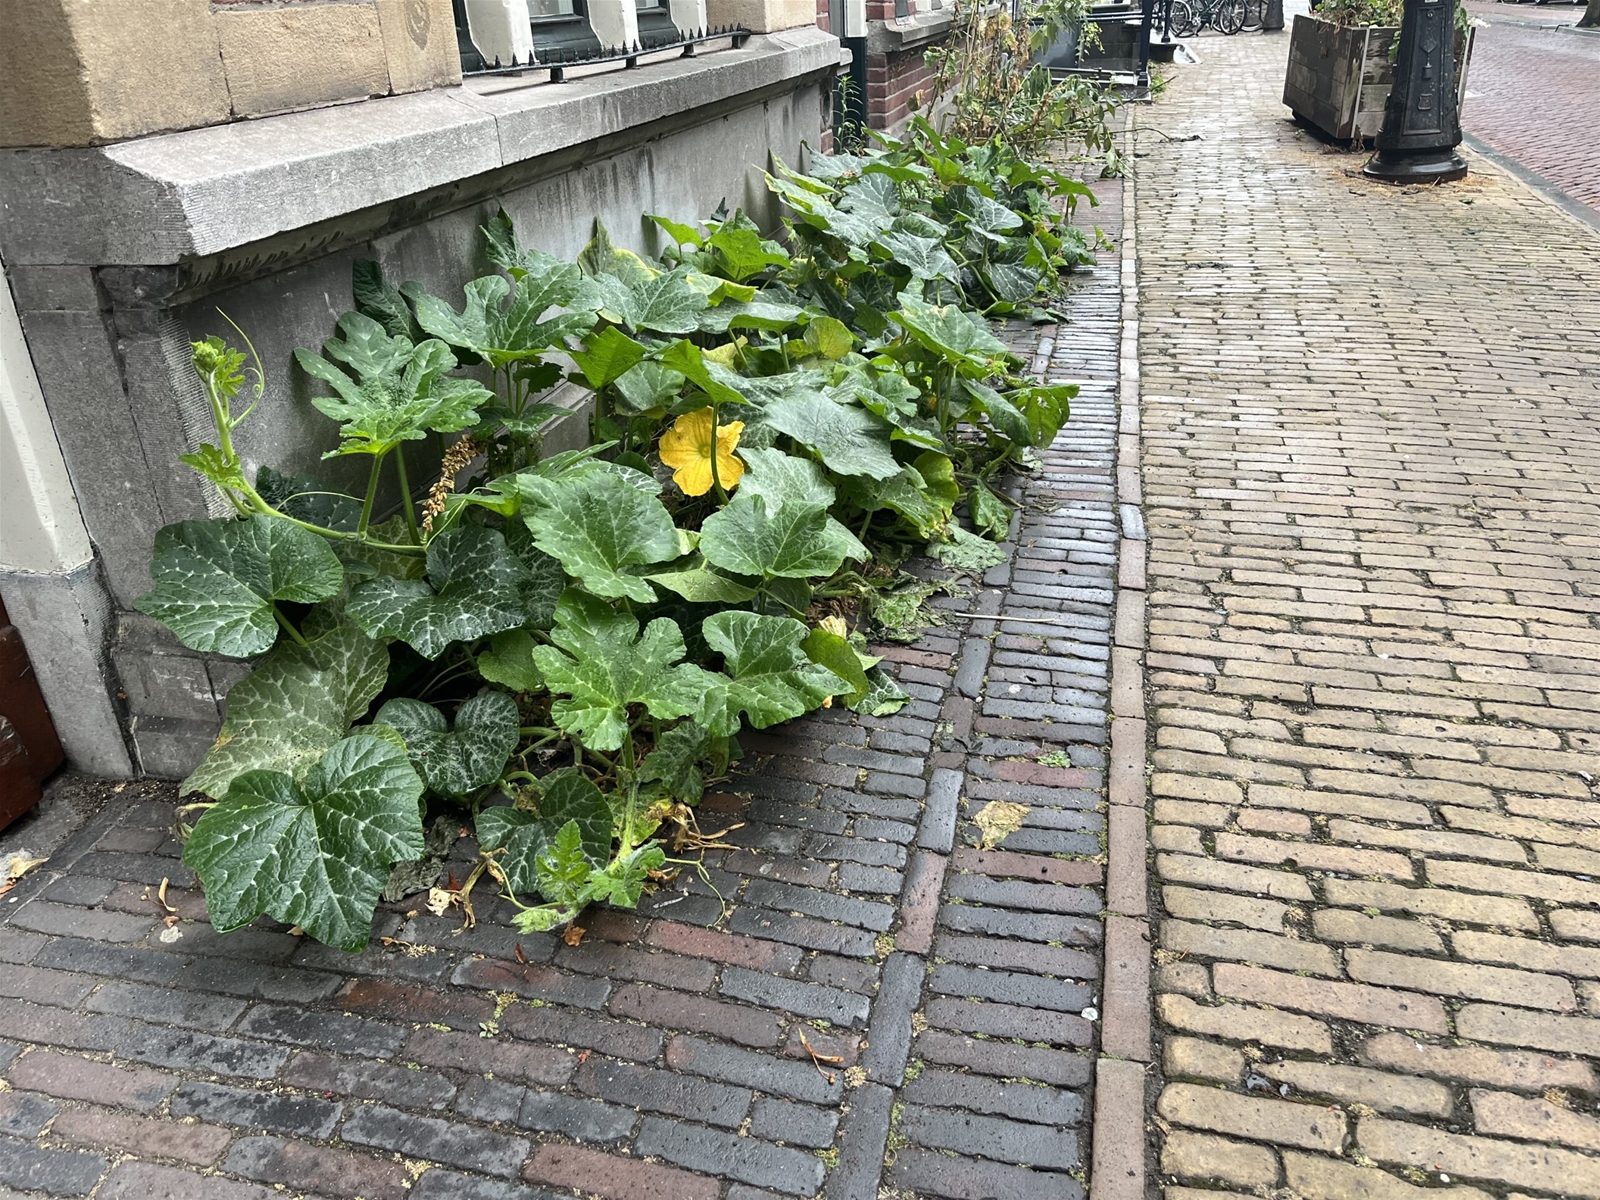 Foto van een stoep in de stad waar tegels gewipt zijn om ruimte te maken voor een groetnetuintje waar courgettes groeien